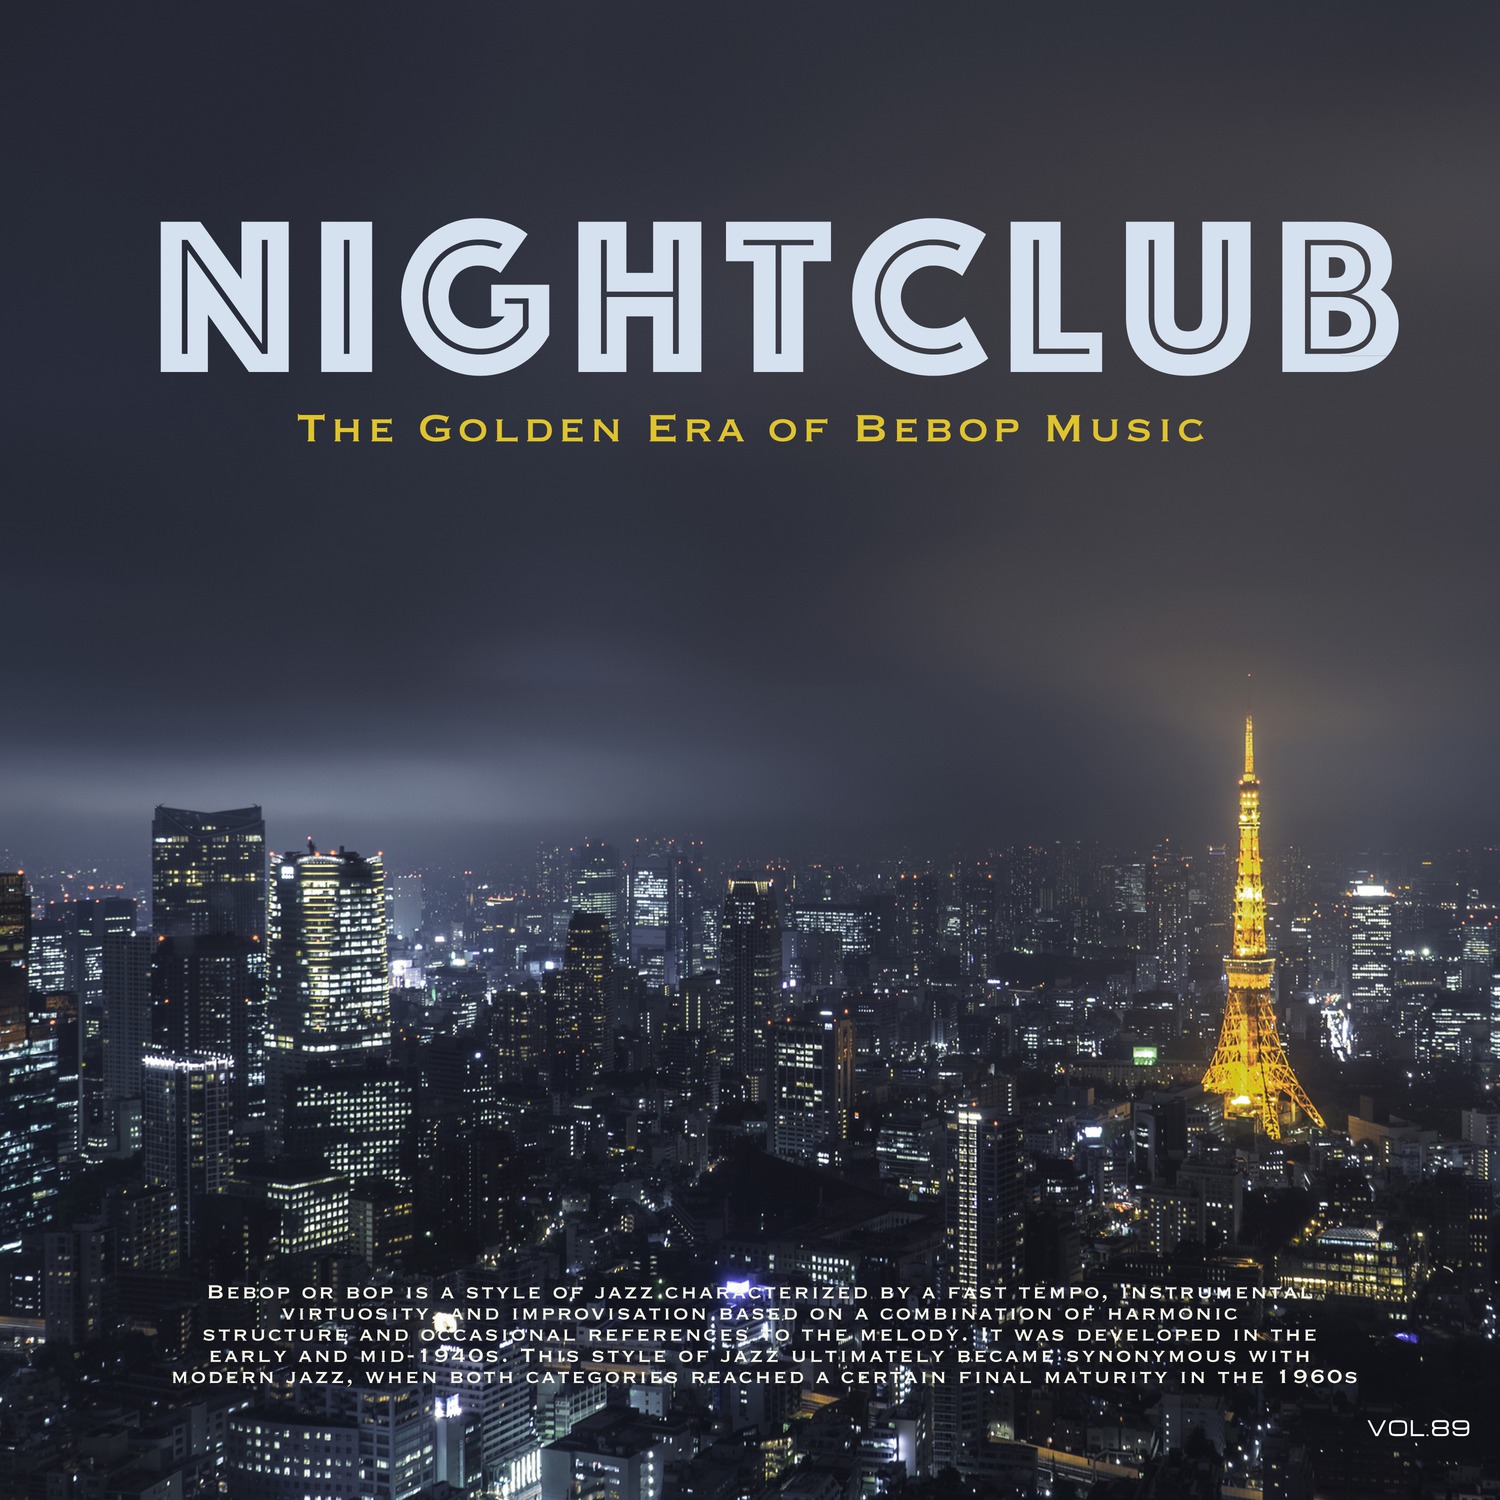 Nightclub, Vol. 89 (The Golden Era of Bebop Music)